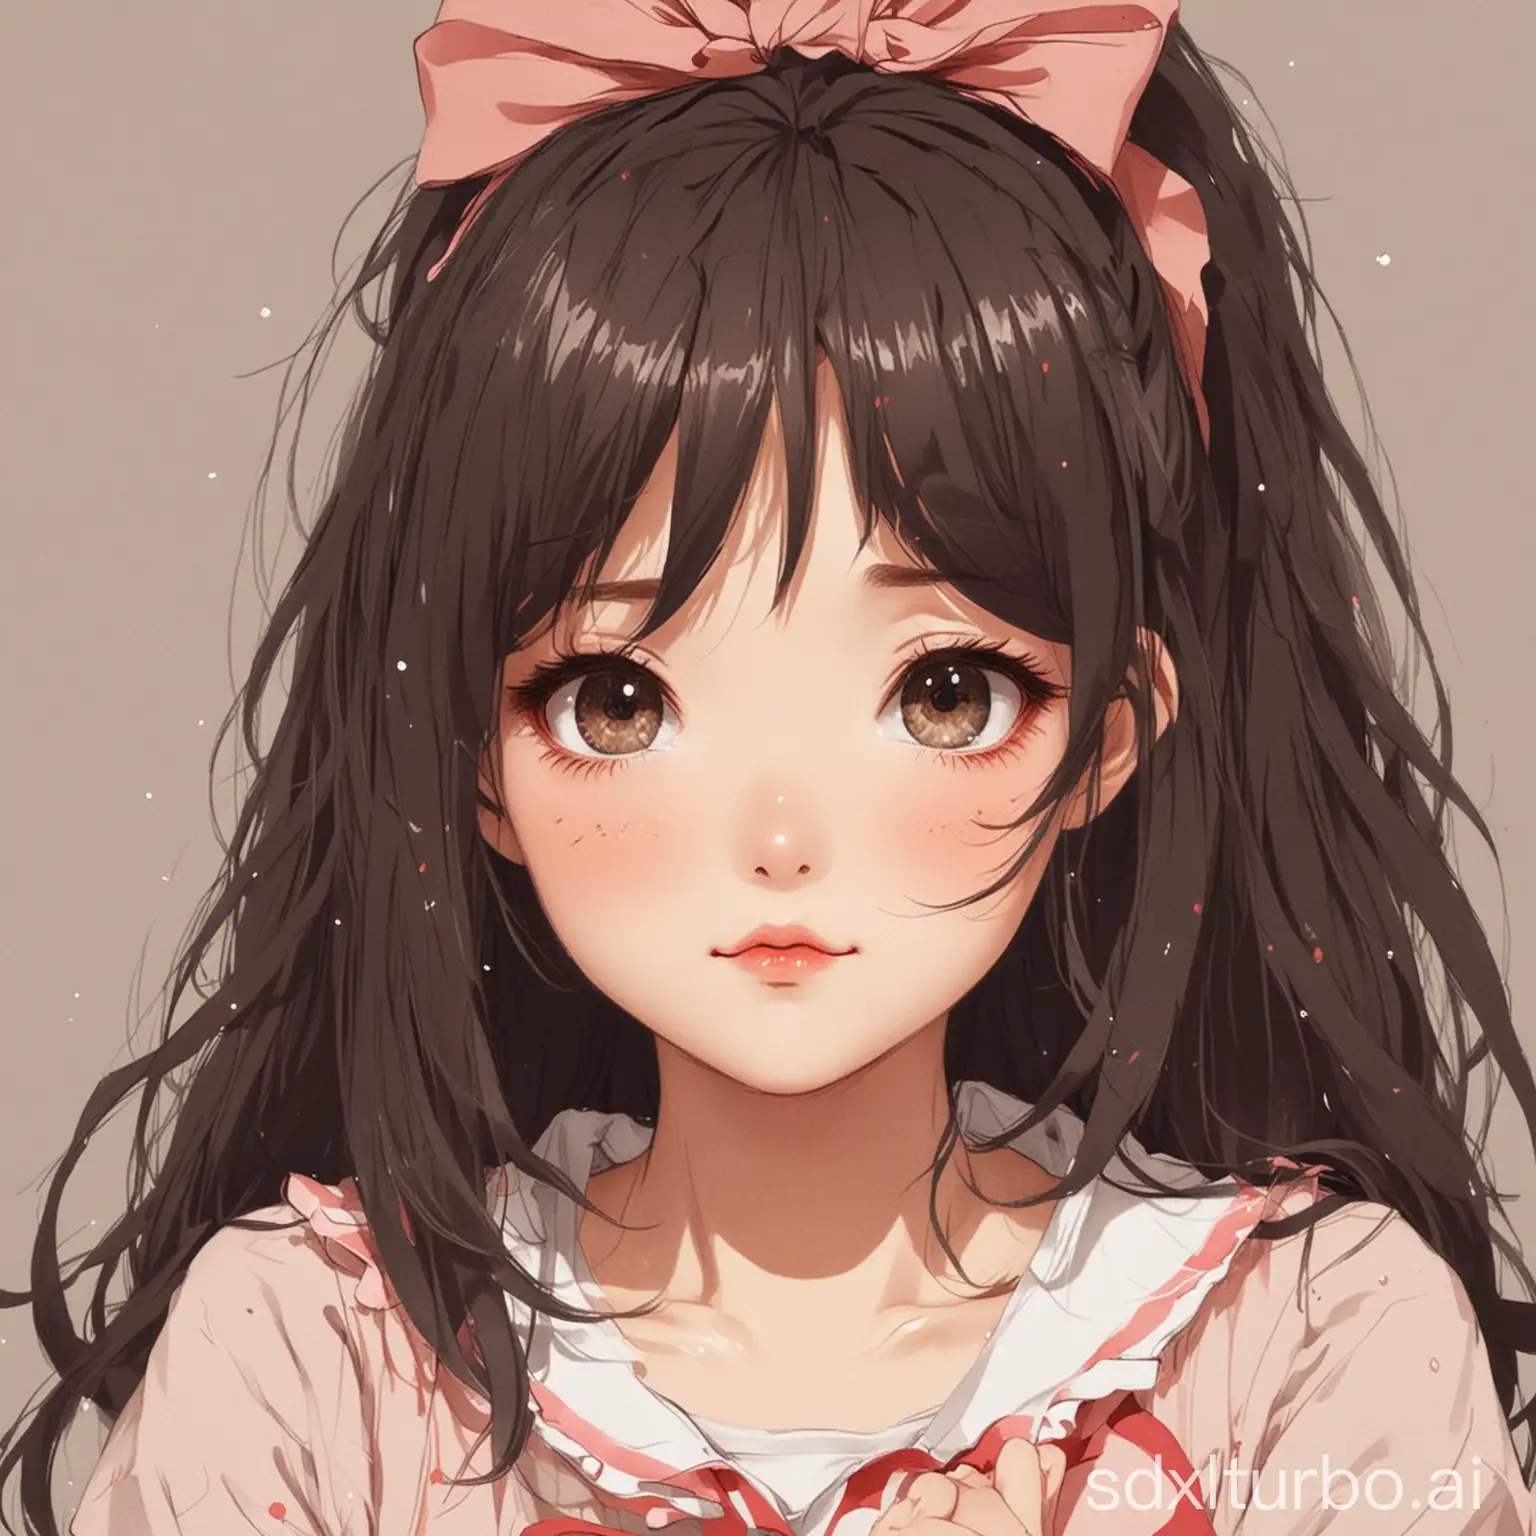 illustration, girl anime, adorable portrayal